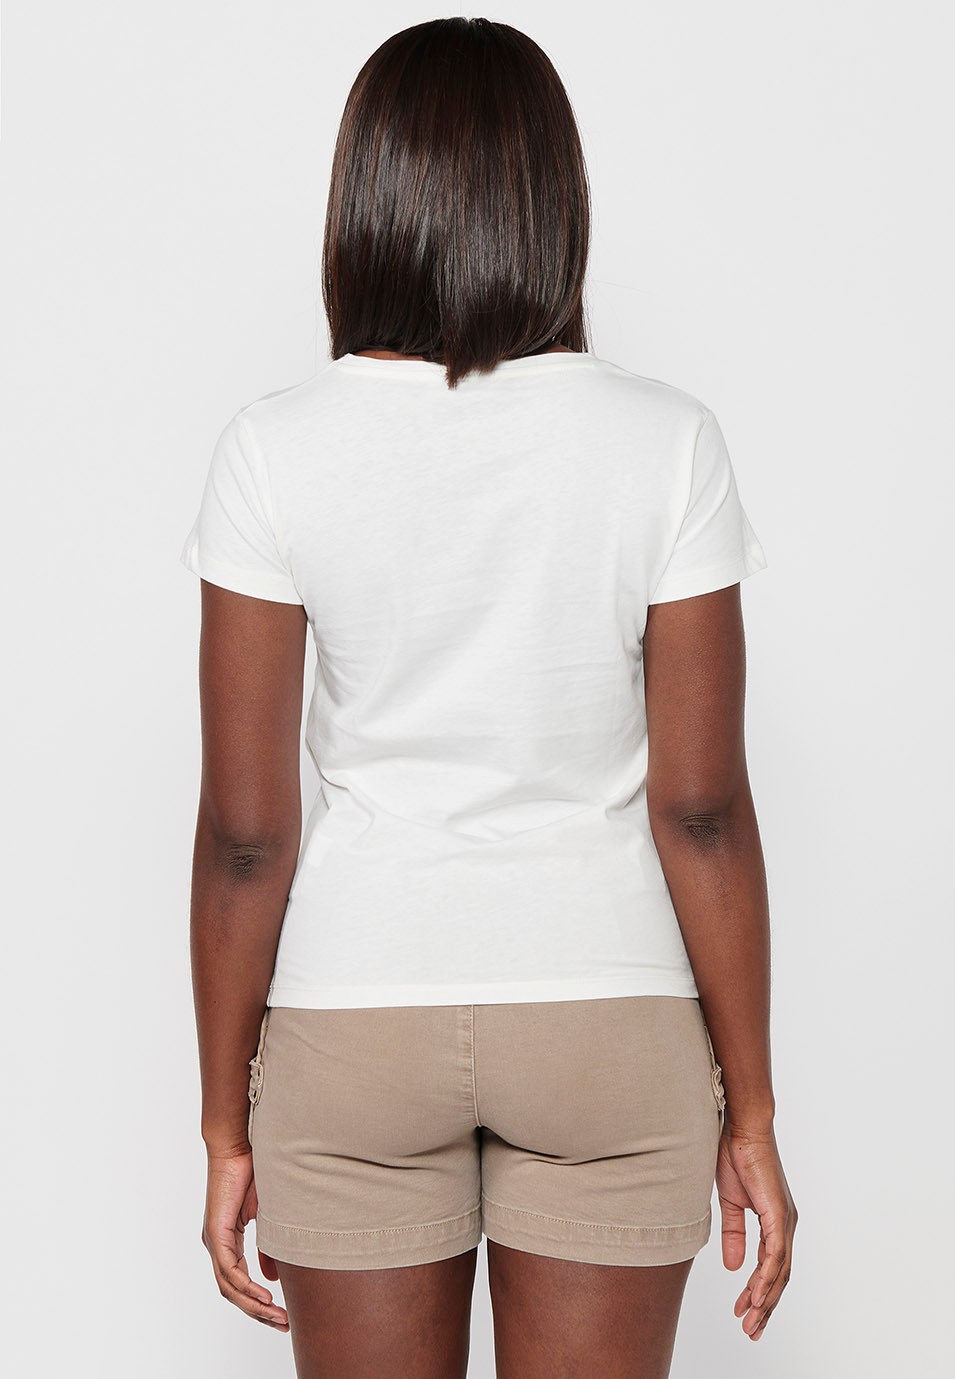 Damen-T-Shirt aus Baumwolle mit kurzen Ärmeln, Rundhalsausschnitt und ecrufarbenem Aufdruck auf der Vorderseite 5